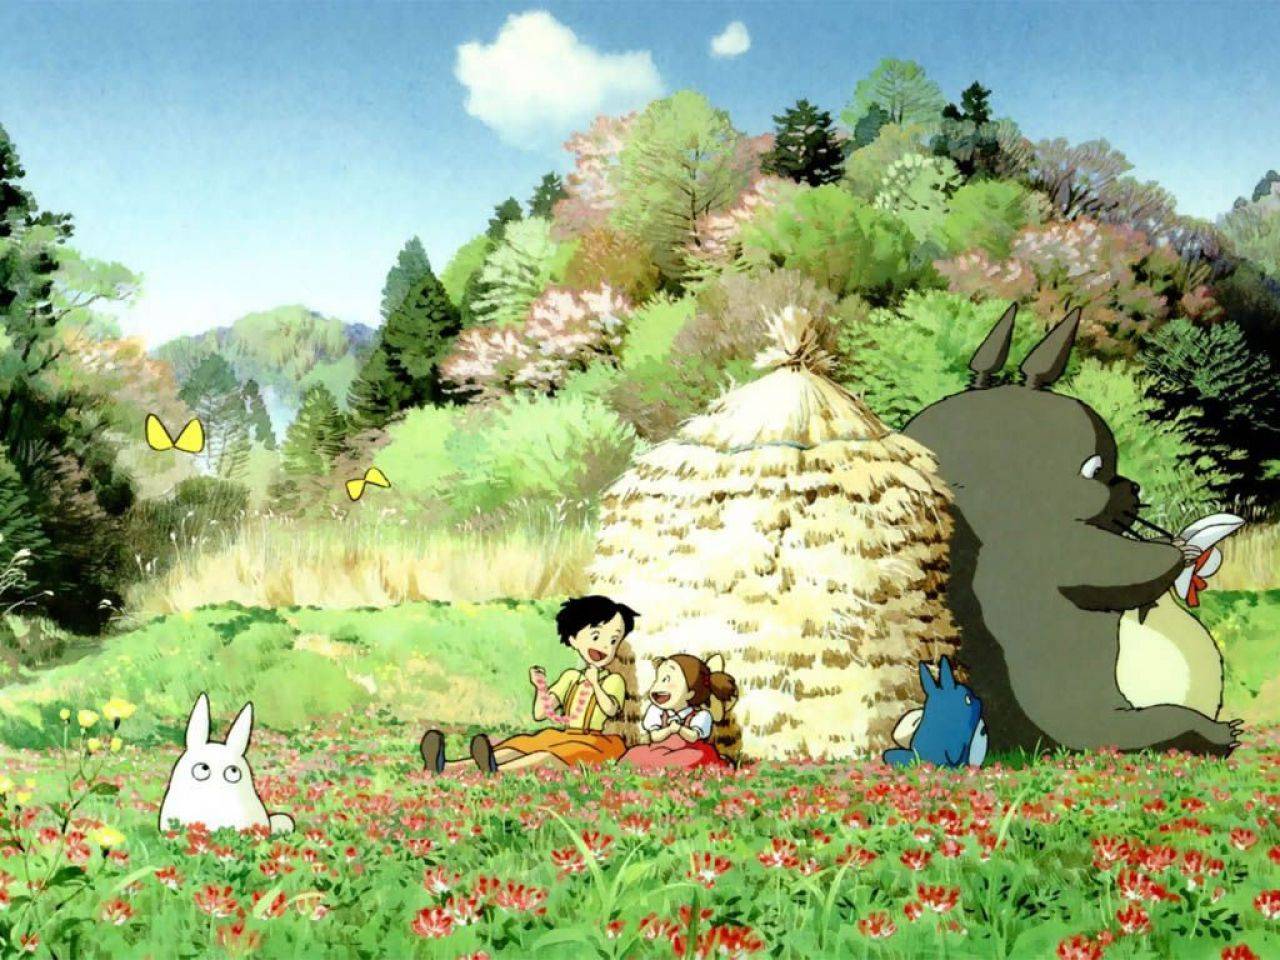 My Neighbor Totoro / My Neighbor Totoro (1988)